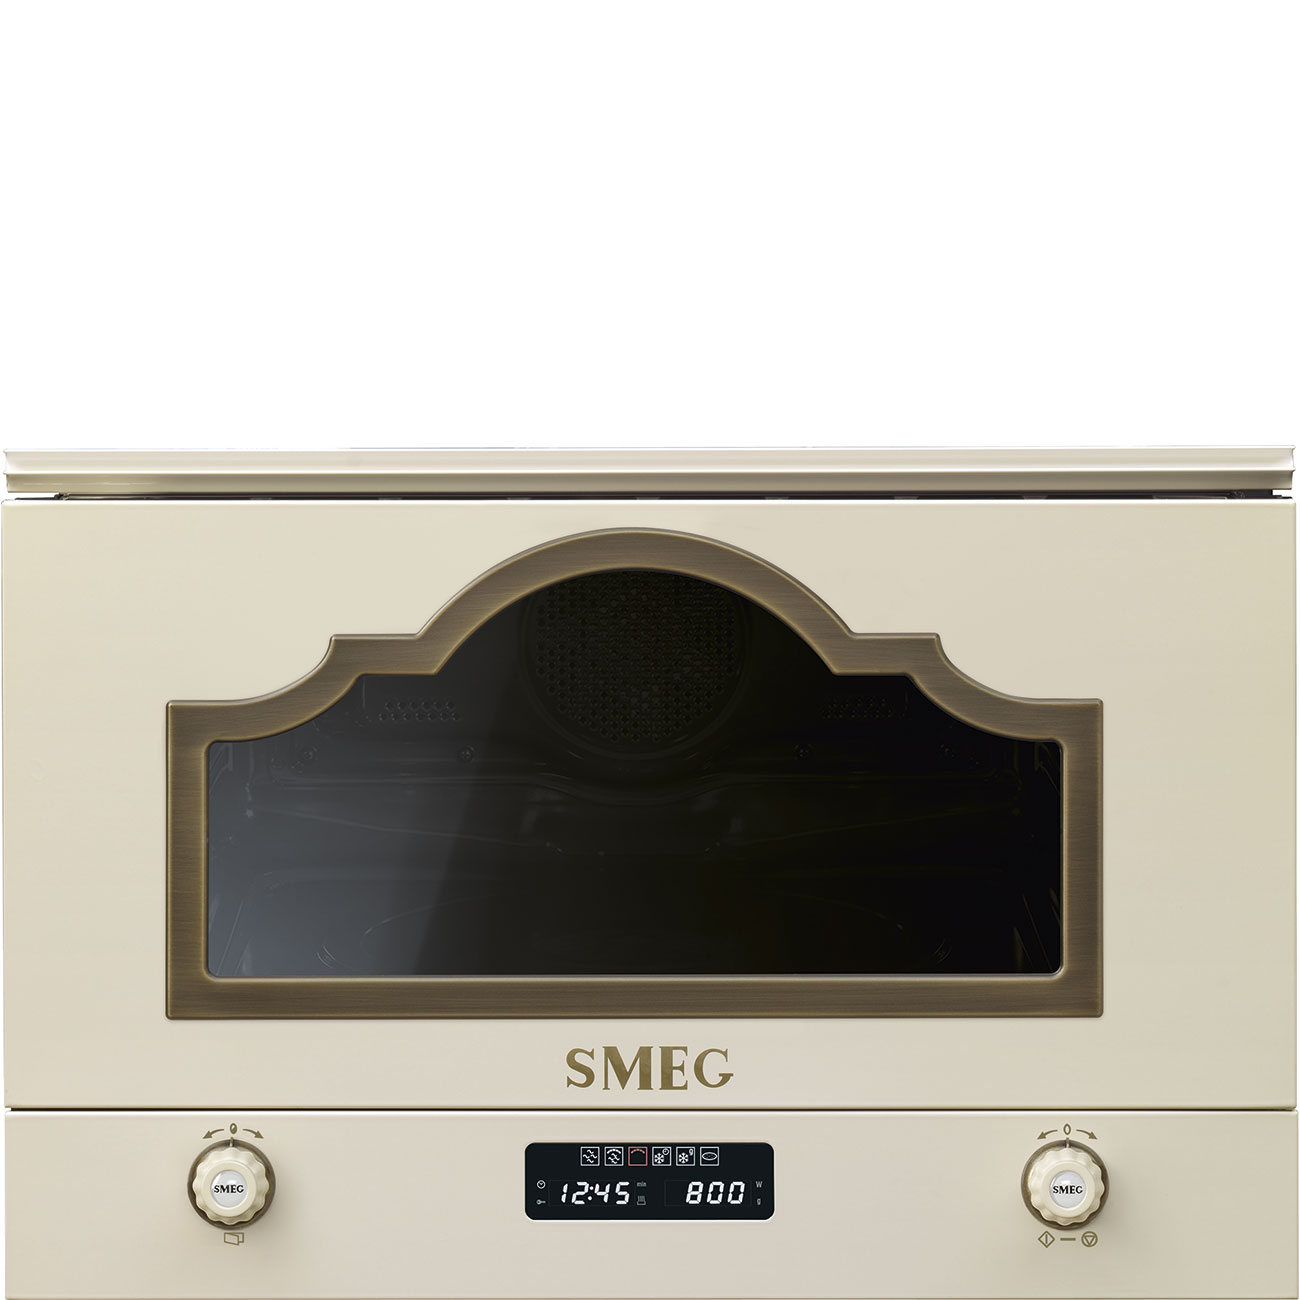 Built-in Microwave MP722PO Smeg_1